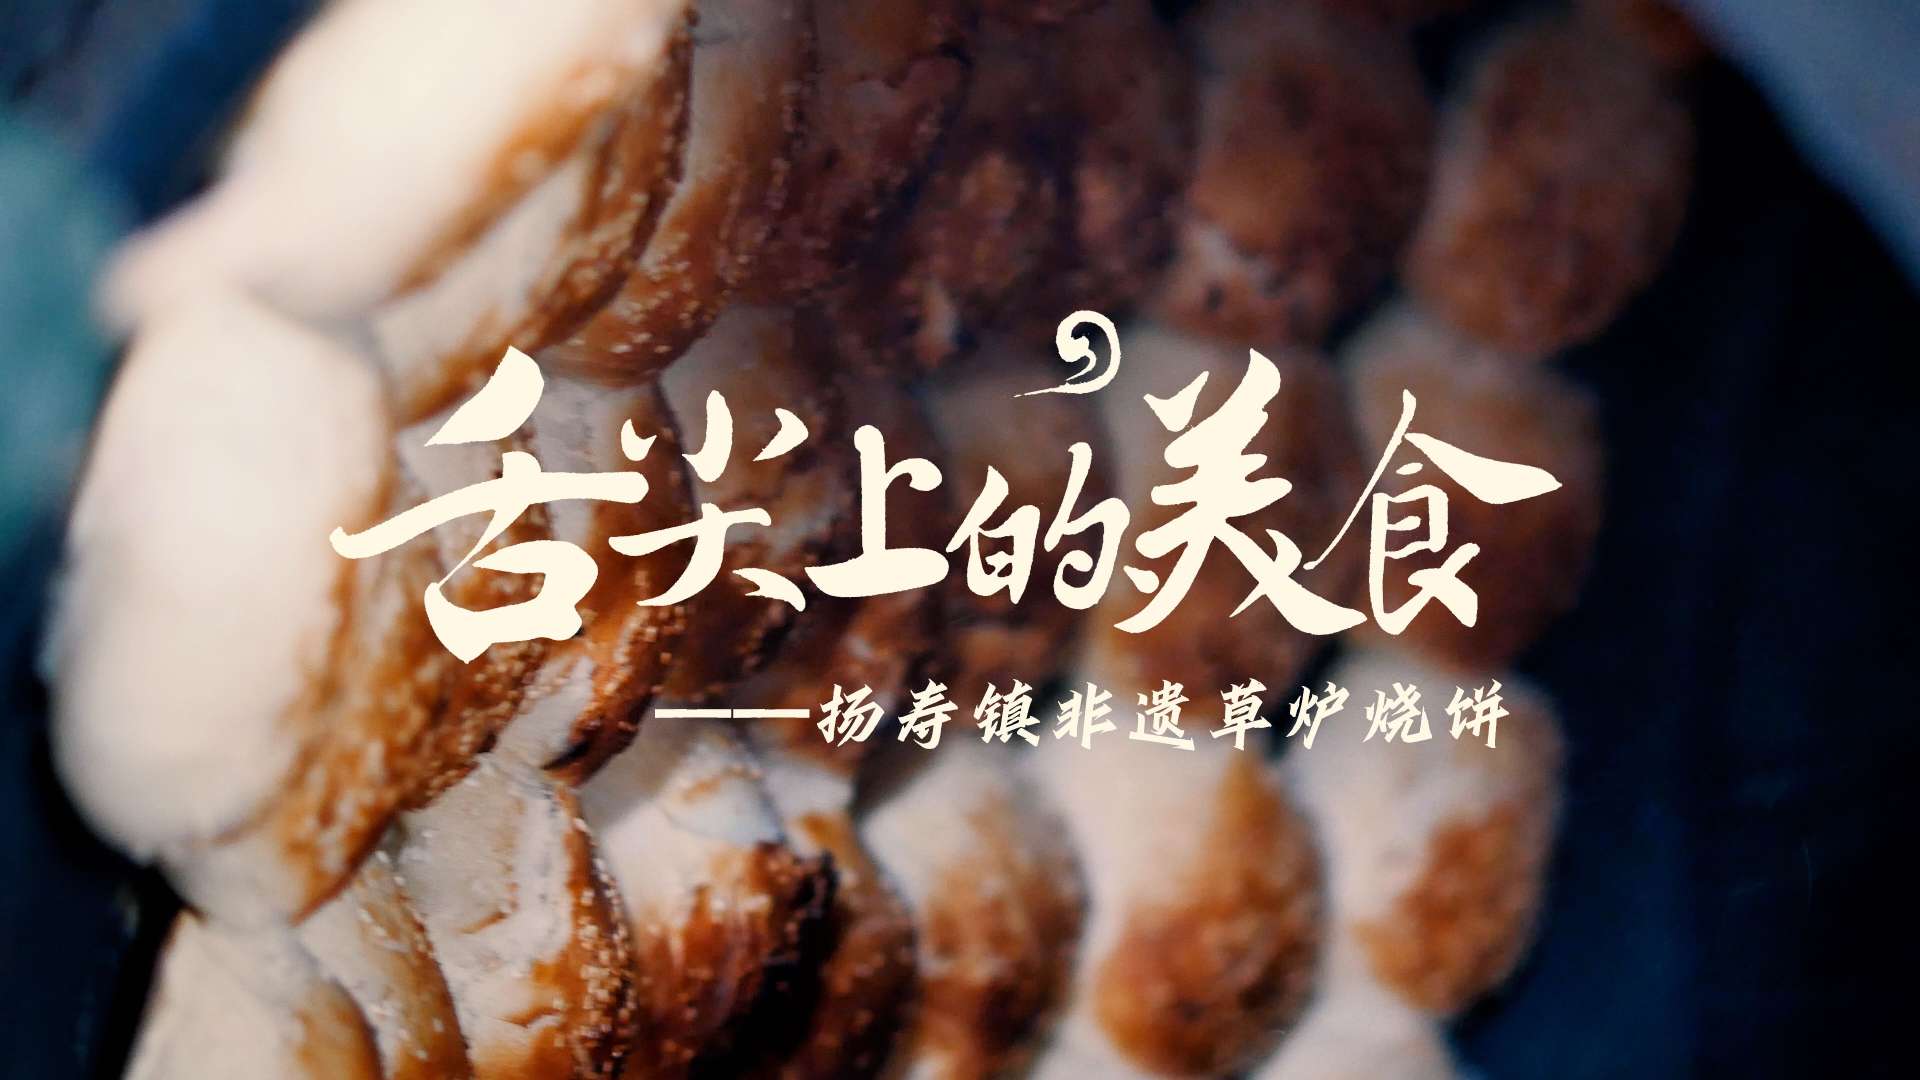 探店VLOG :舌尖上的美食——扬寿镇非遗草炉烧饼